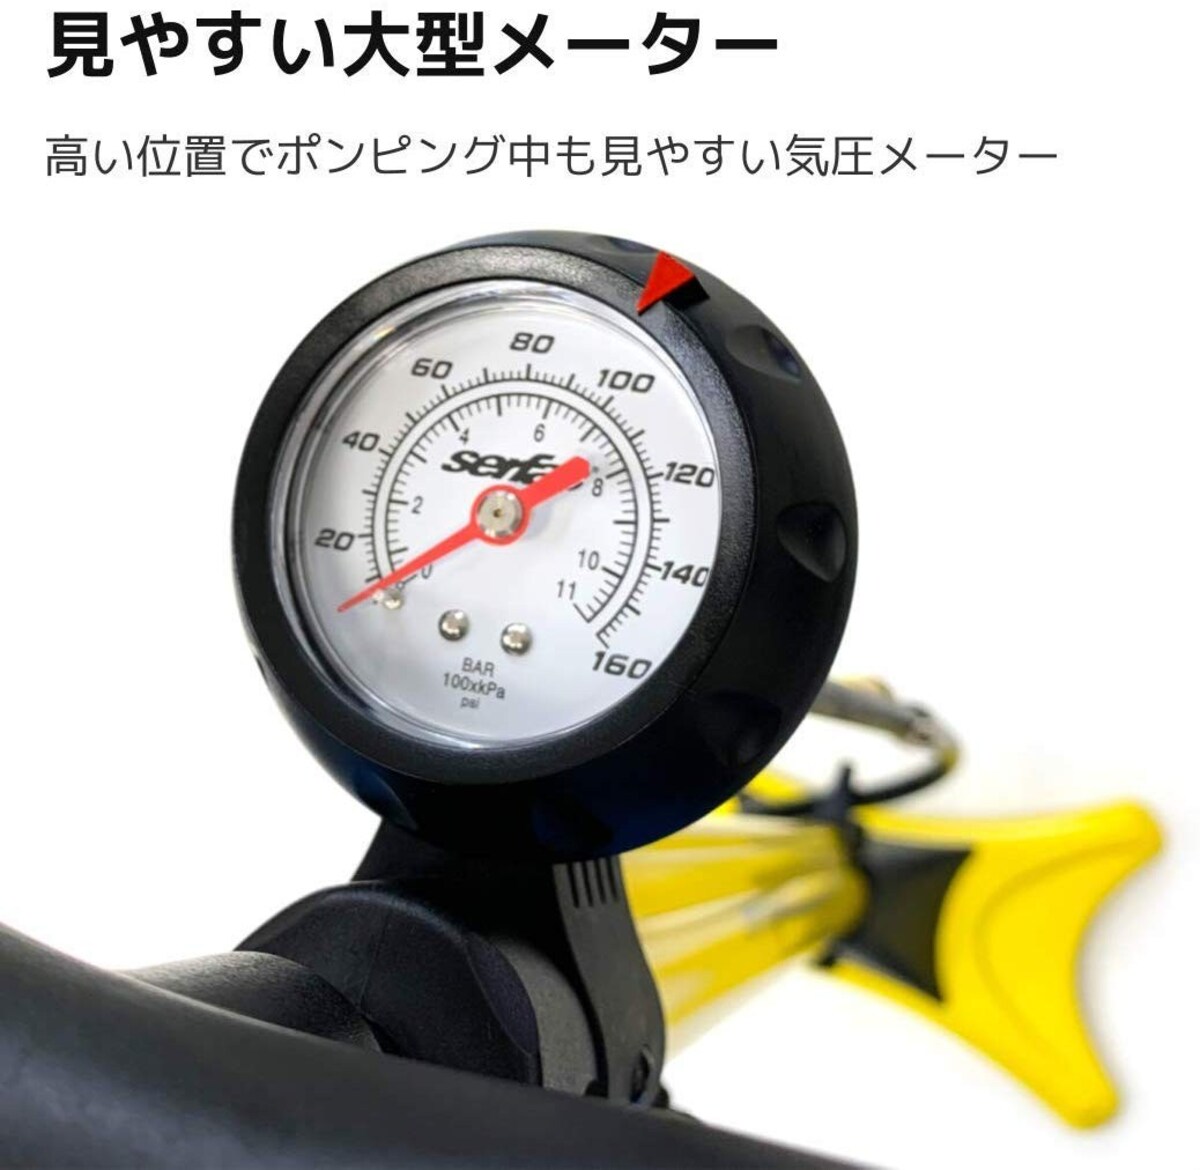  自転車用 高圧空気入れ  FP‐200シリーズ画像4 